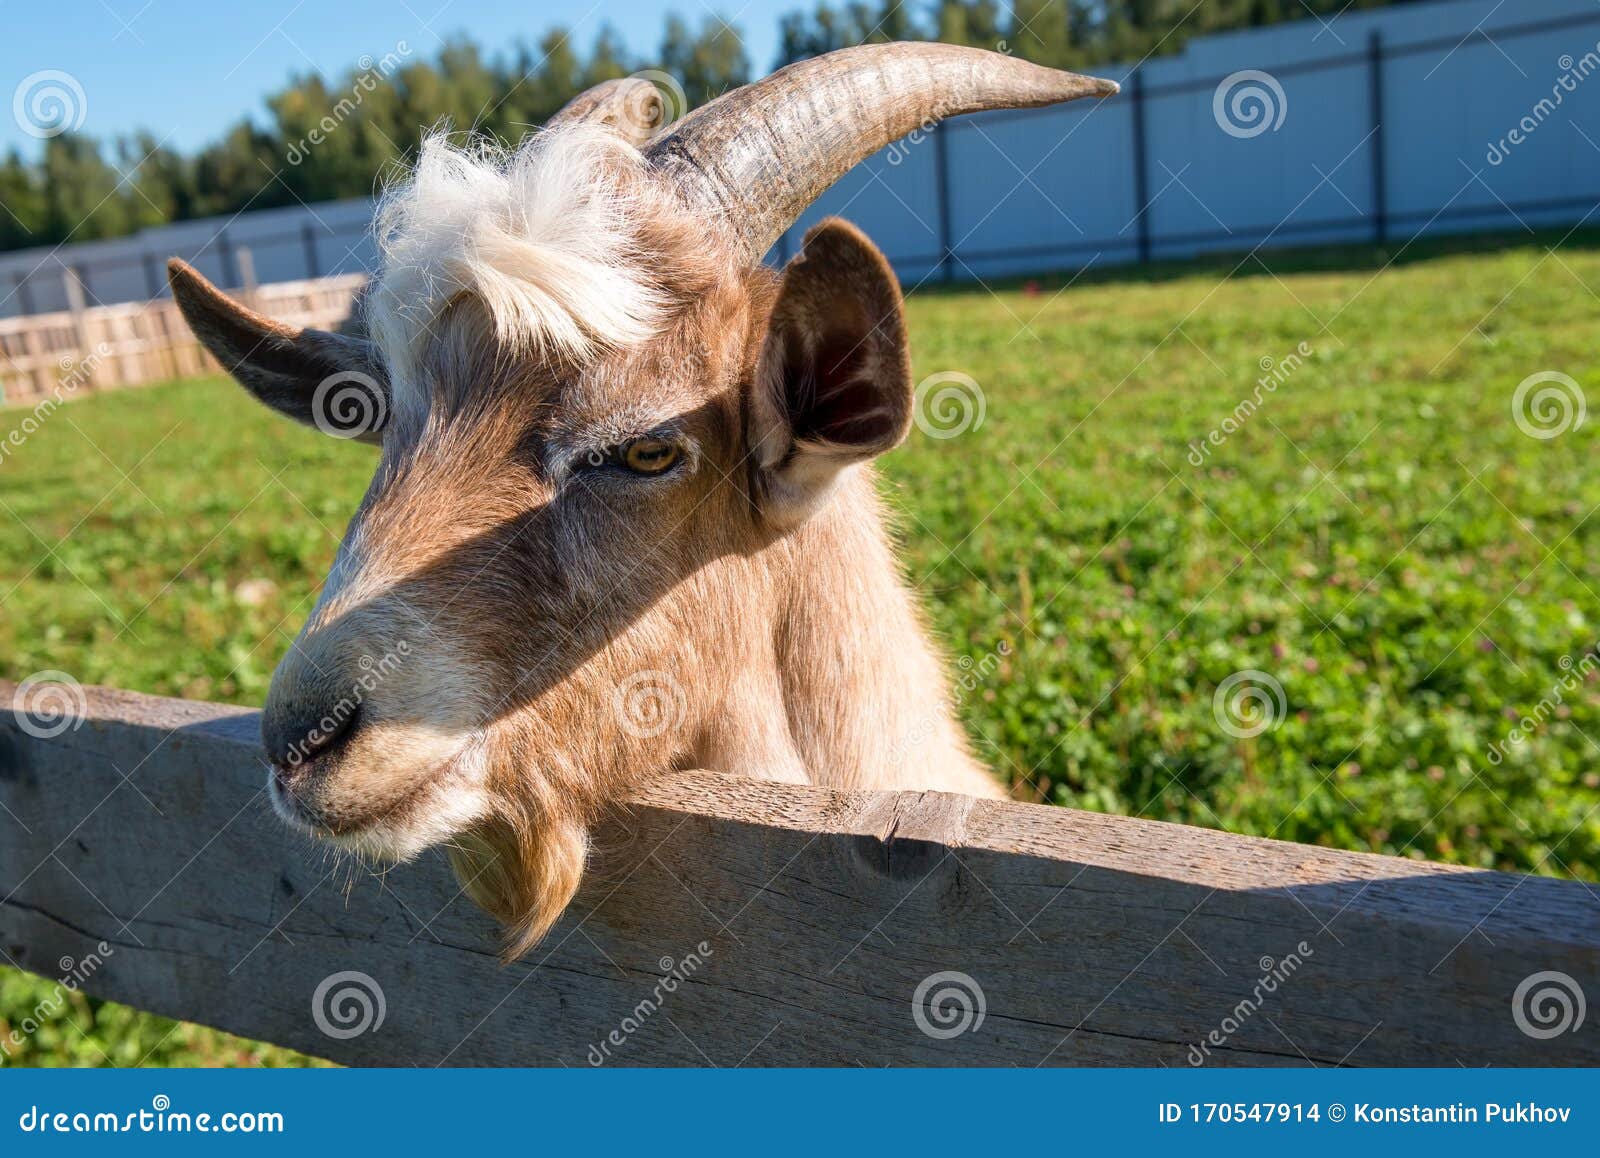 Goat Eating Lele Hair  Derek Marshall  Flickr